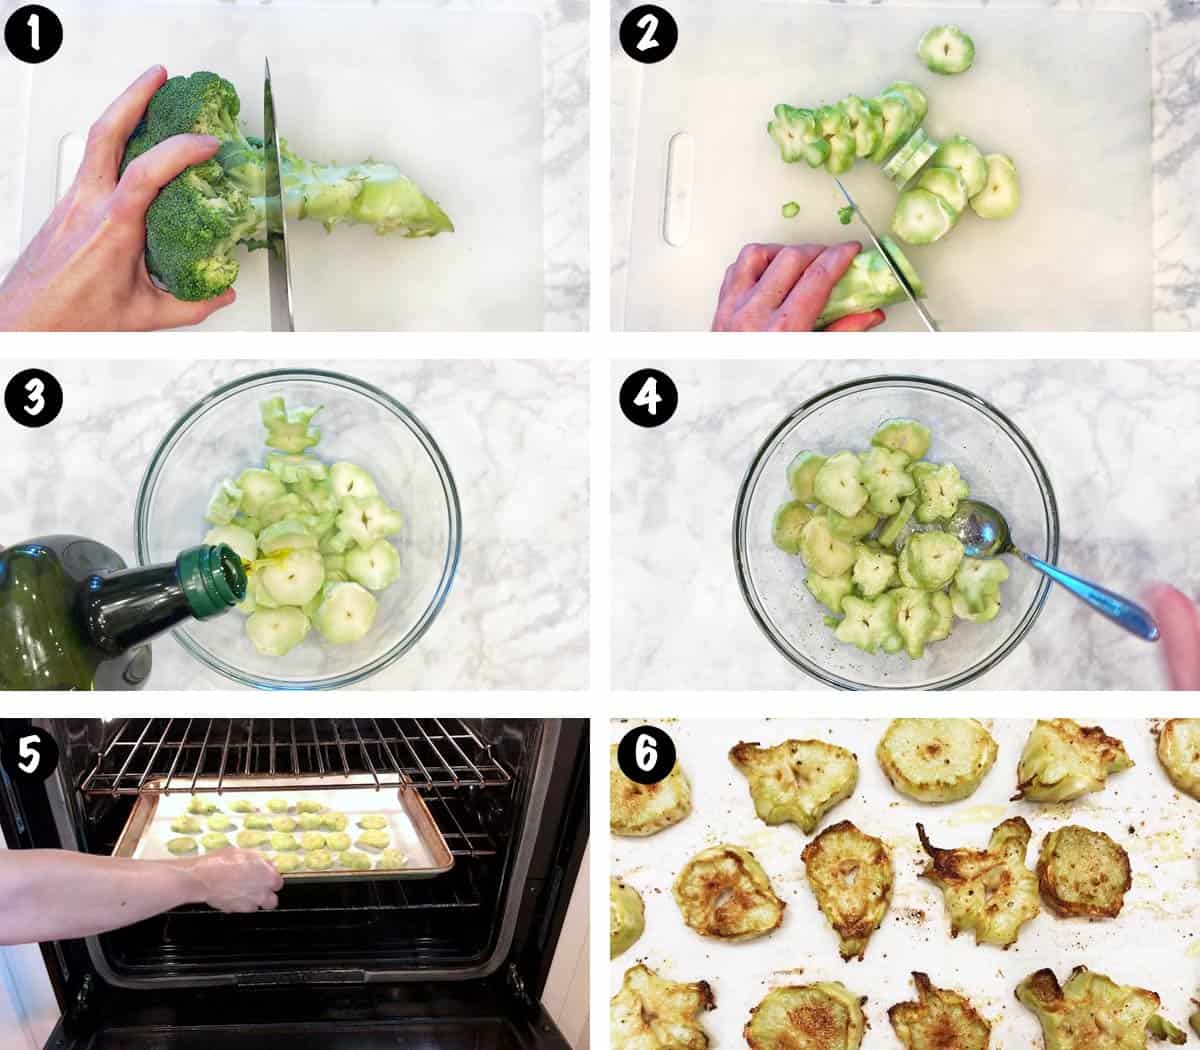 Un collage de seis fotos que muestra los pasos para cocinar tallos de brócoli. 